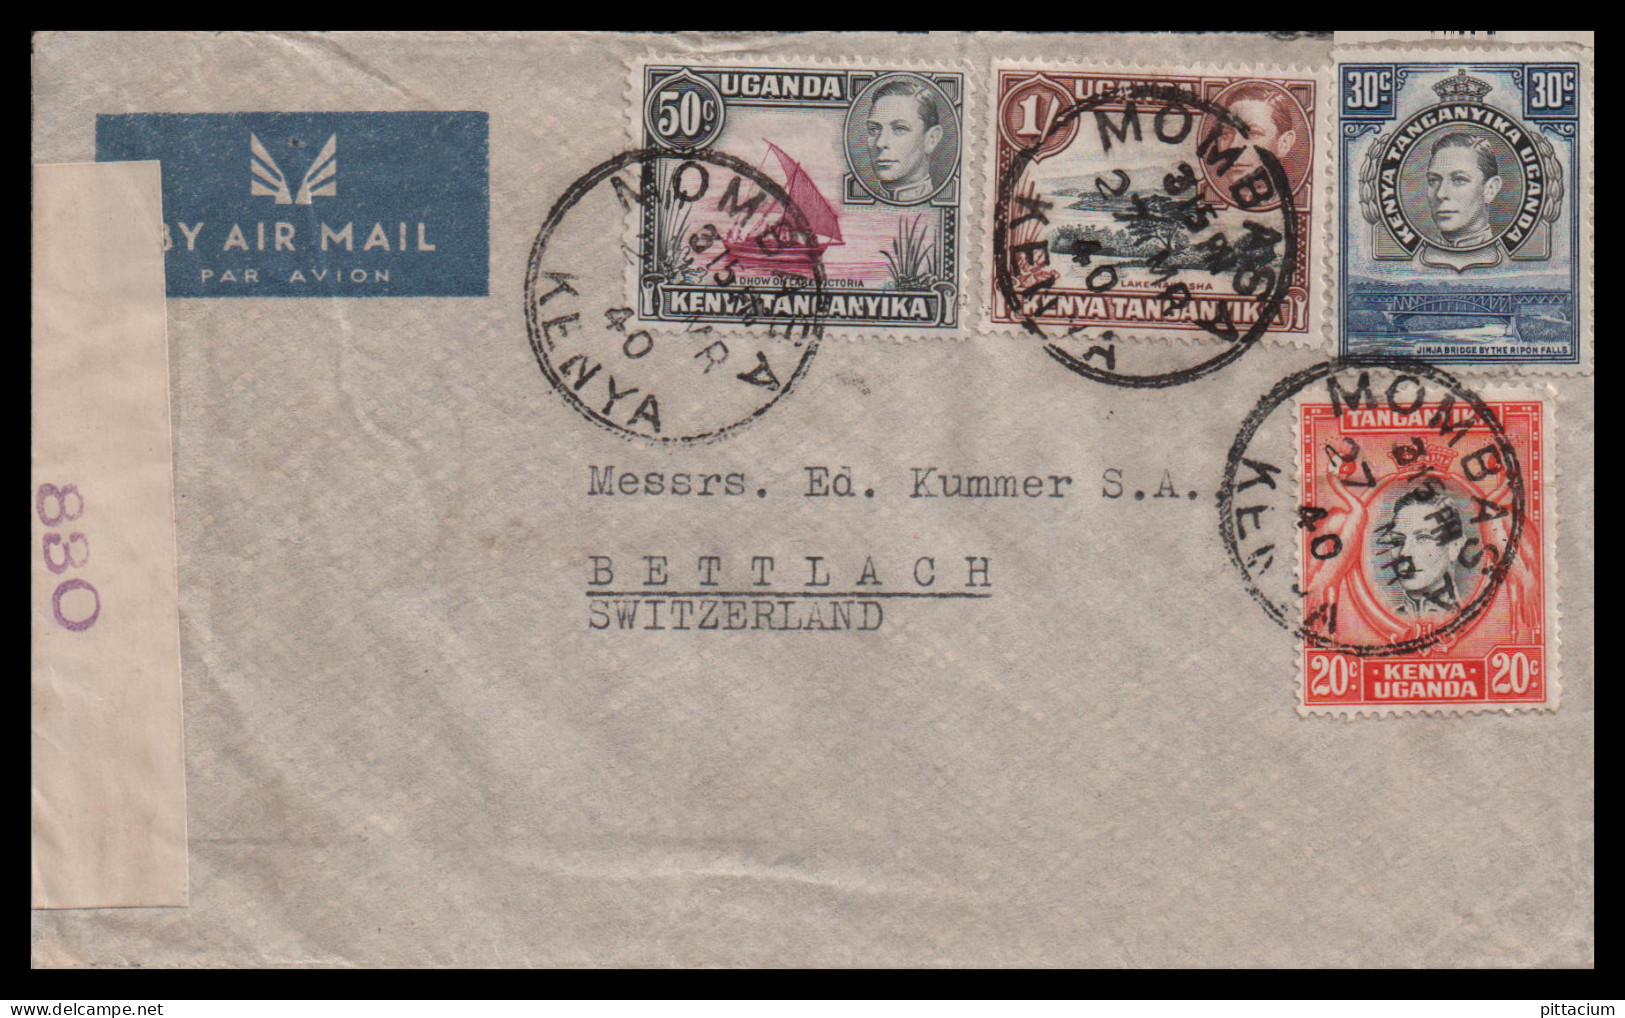 Grossbritannien Gebiete 1940: Luftpostbrief  | Afrika | Mombasa, Bettlach - Kenya & Oeganda